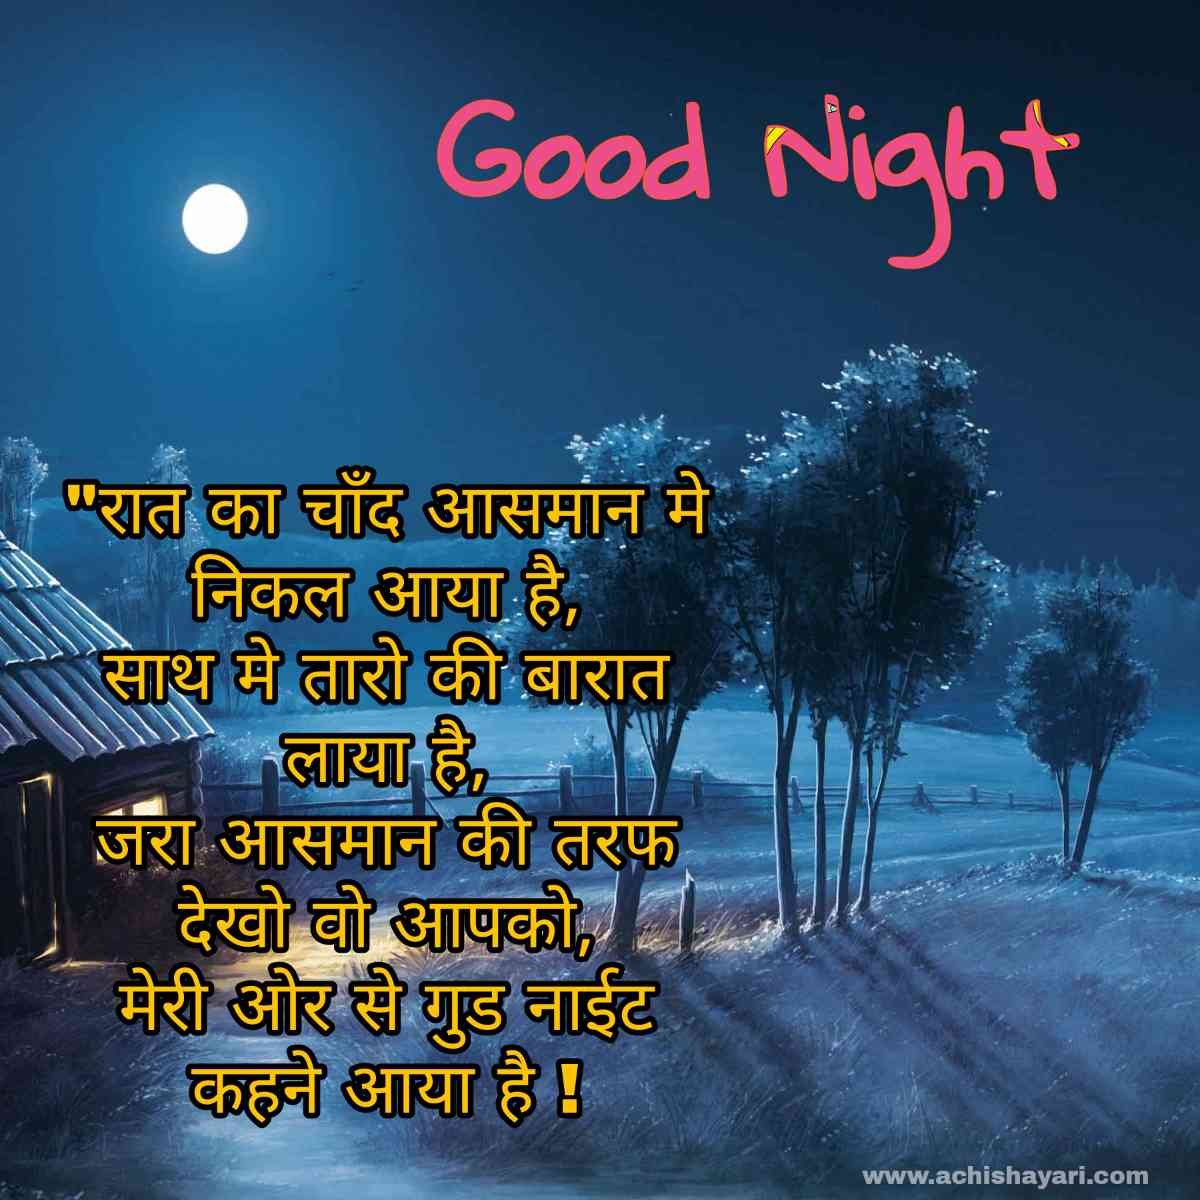 Good night image in hindi